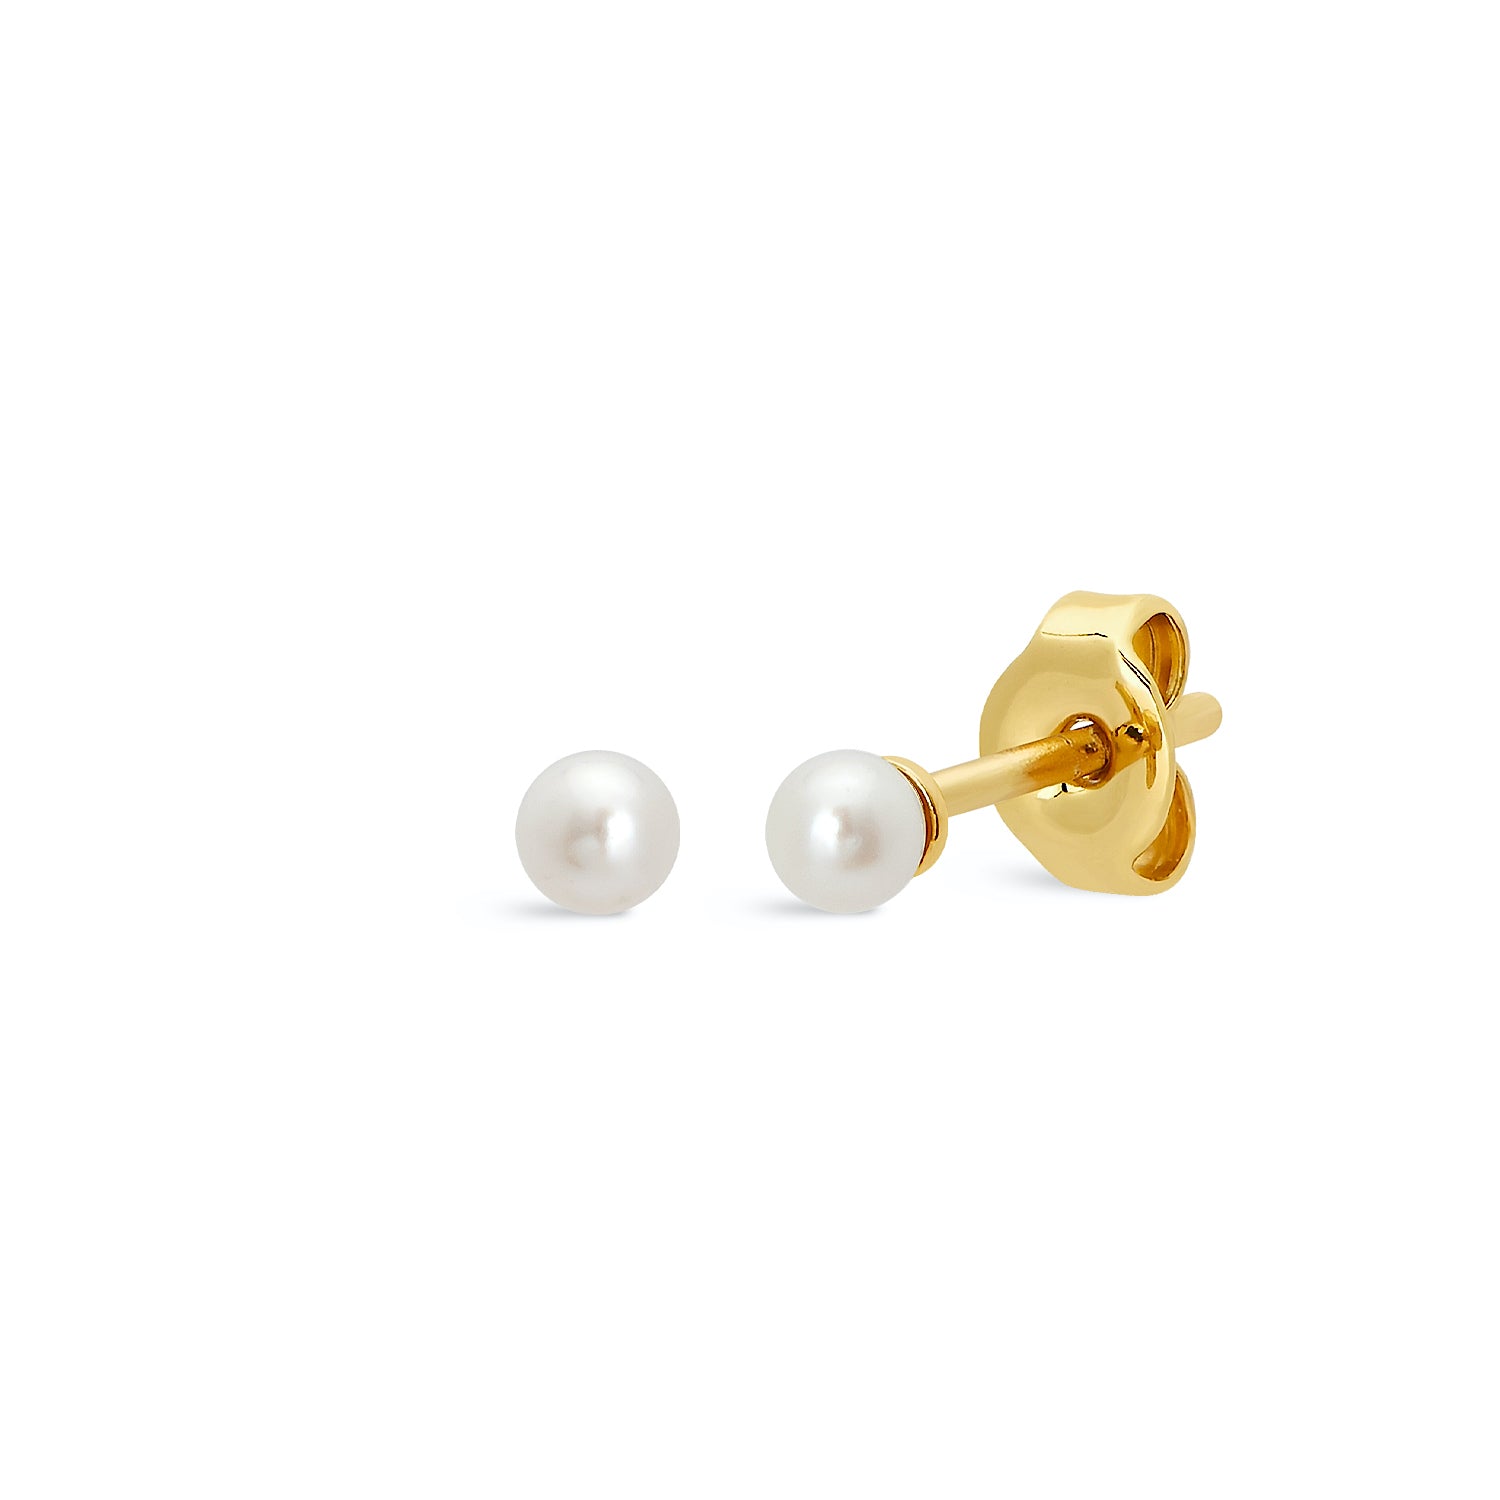 J&CO Jewellery Baby Pearl Stud Earrings Gold